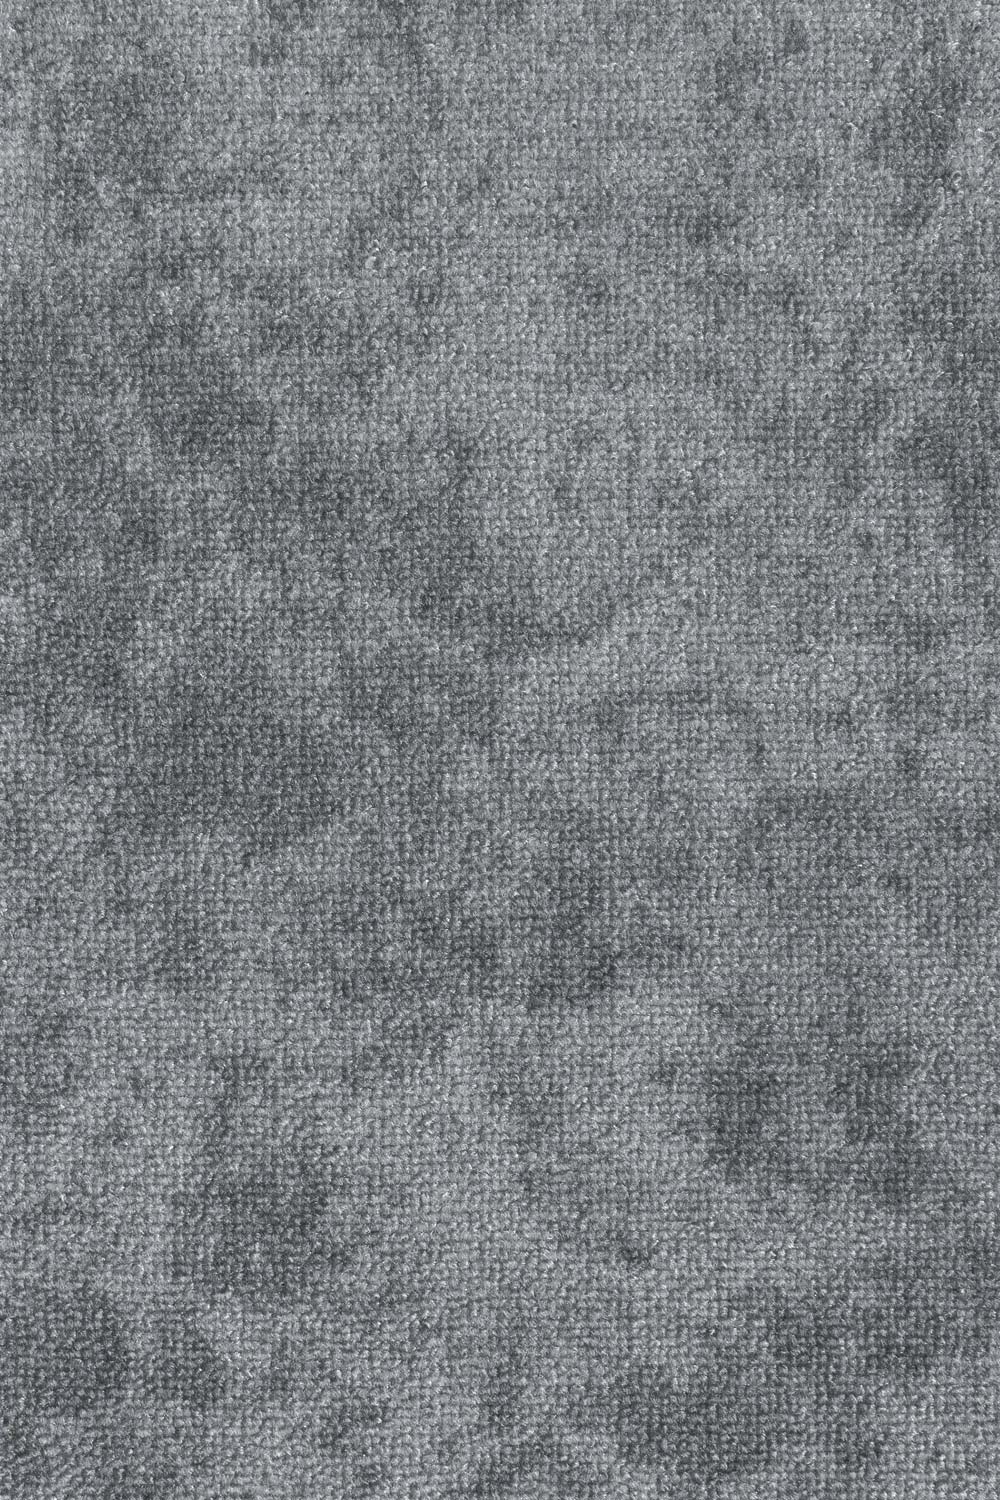 Metrážny koberec PANORAMA 90 400 cm